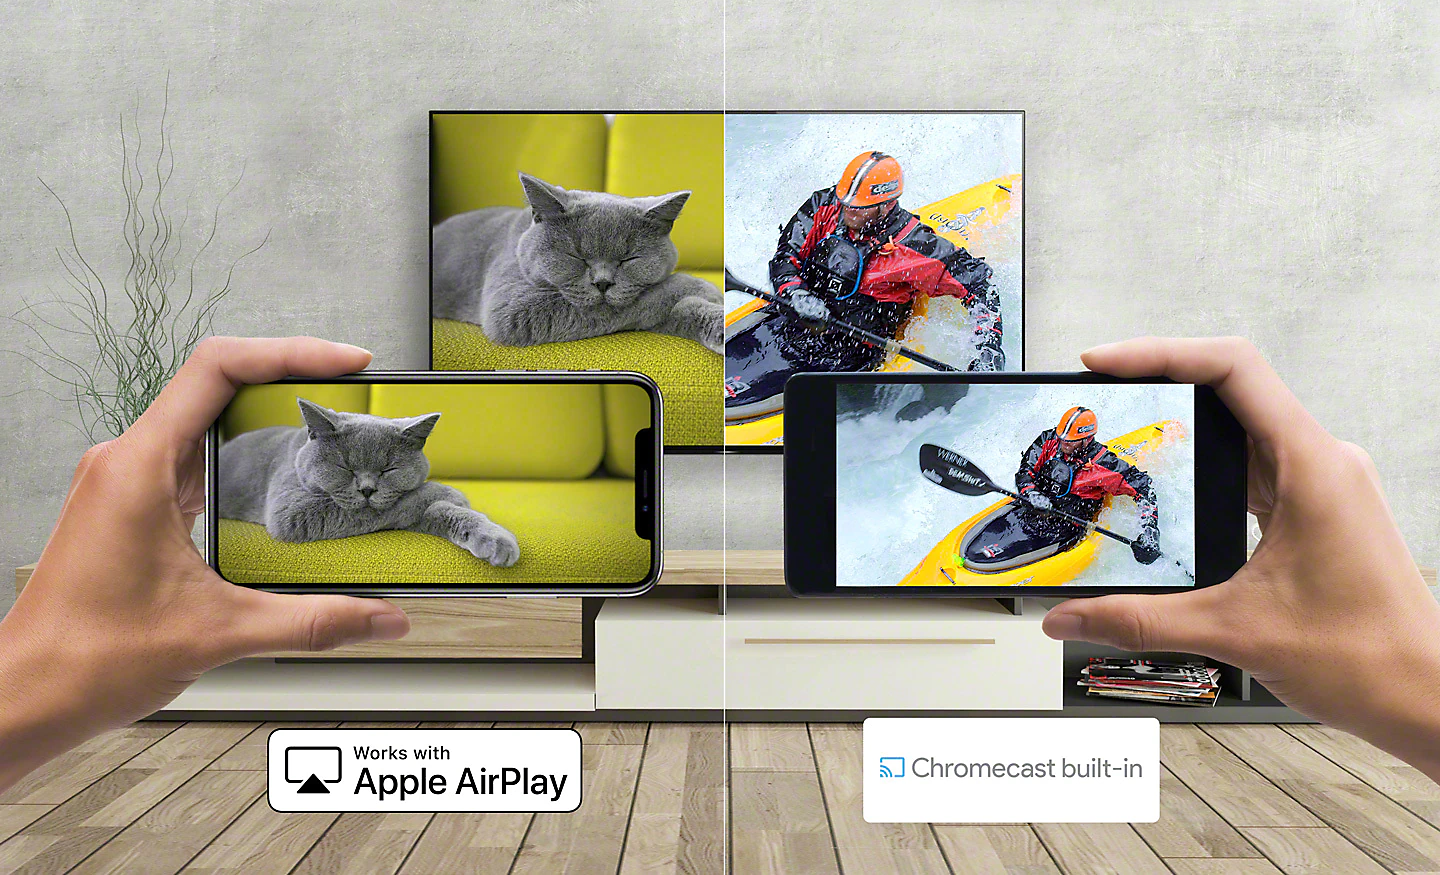 Imágenes de un gato y un piragüista transmitiéndose desde el smartphone al televisor